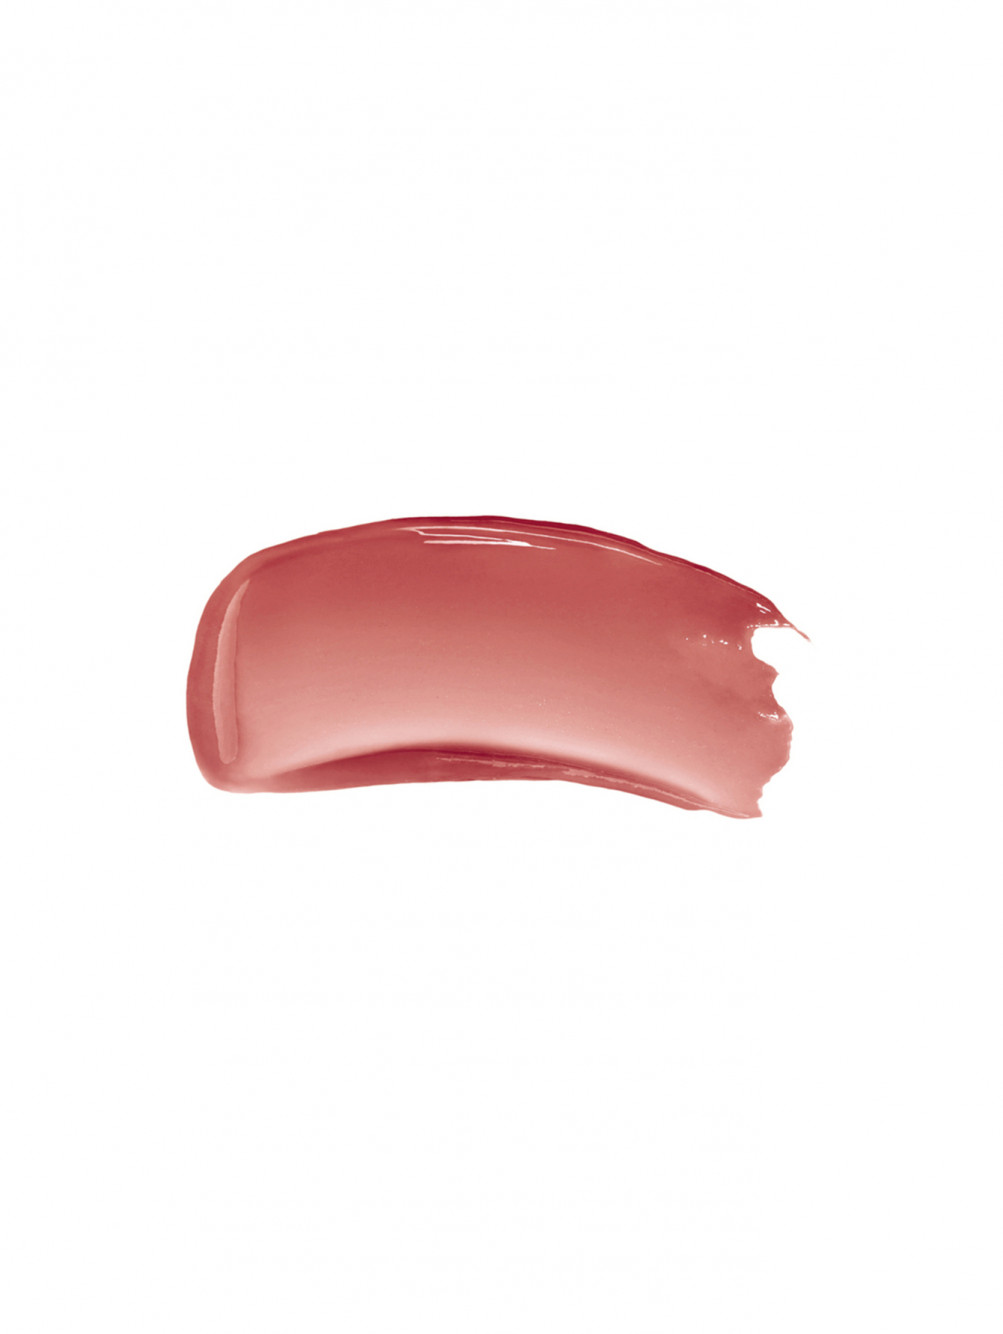 Жидкий бальзам для губ Rose Perfecto Liquid Balm, 210 розовый нюд, 6 мл - Обтравка1